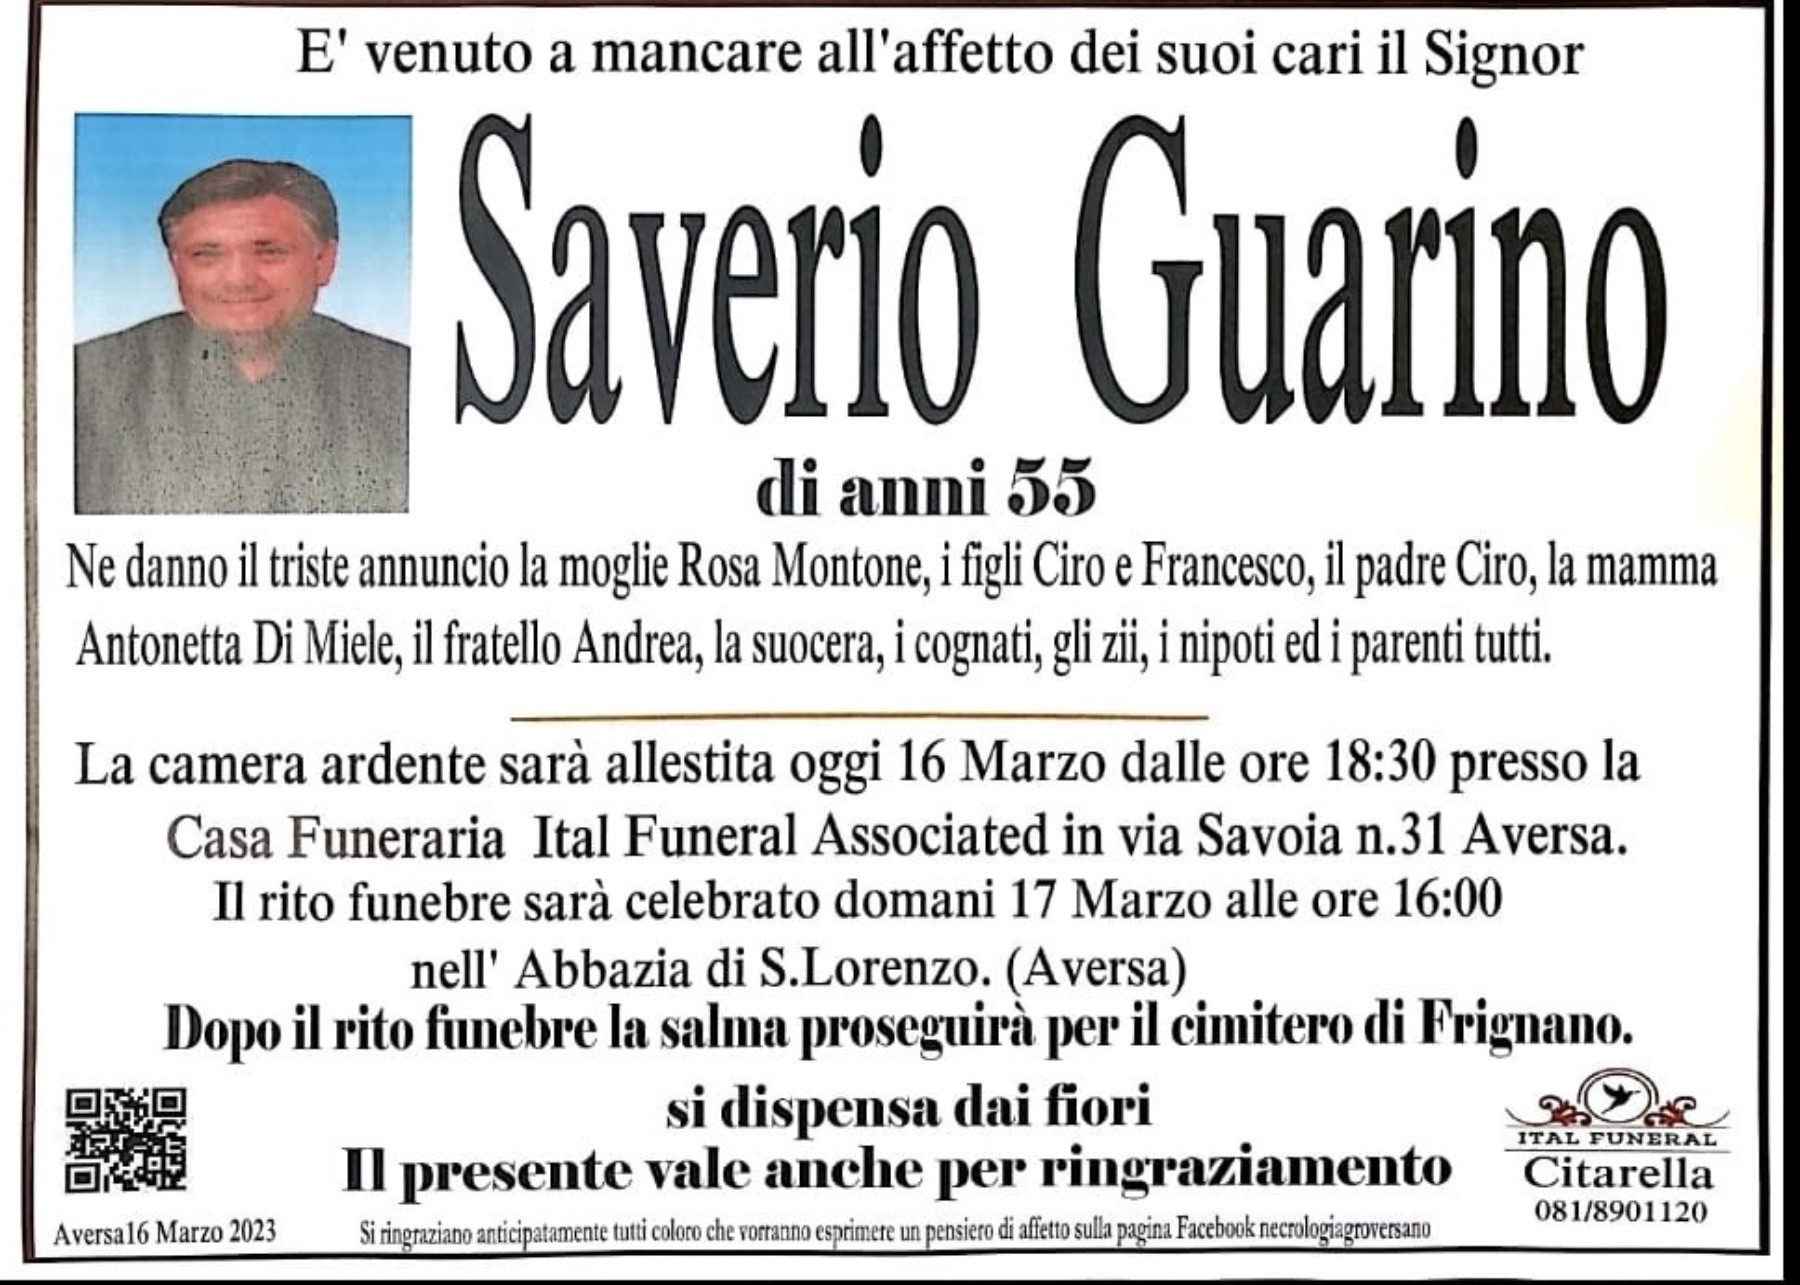 Saverio Guarino